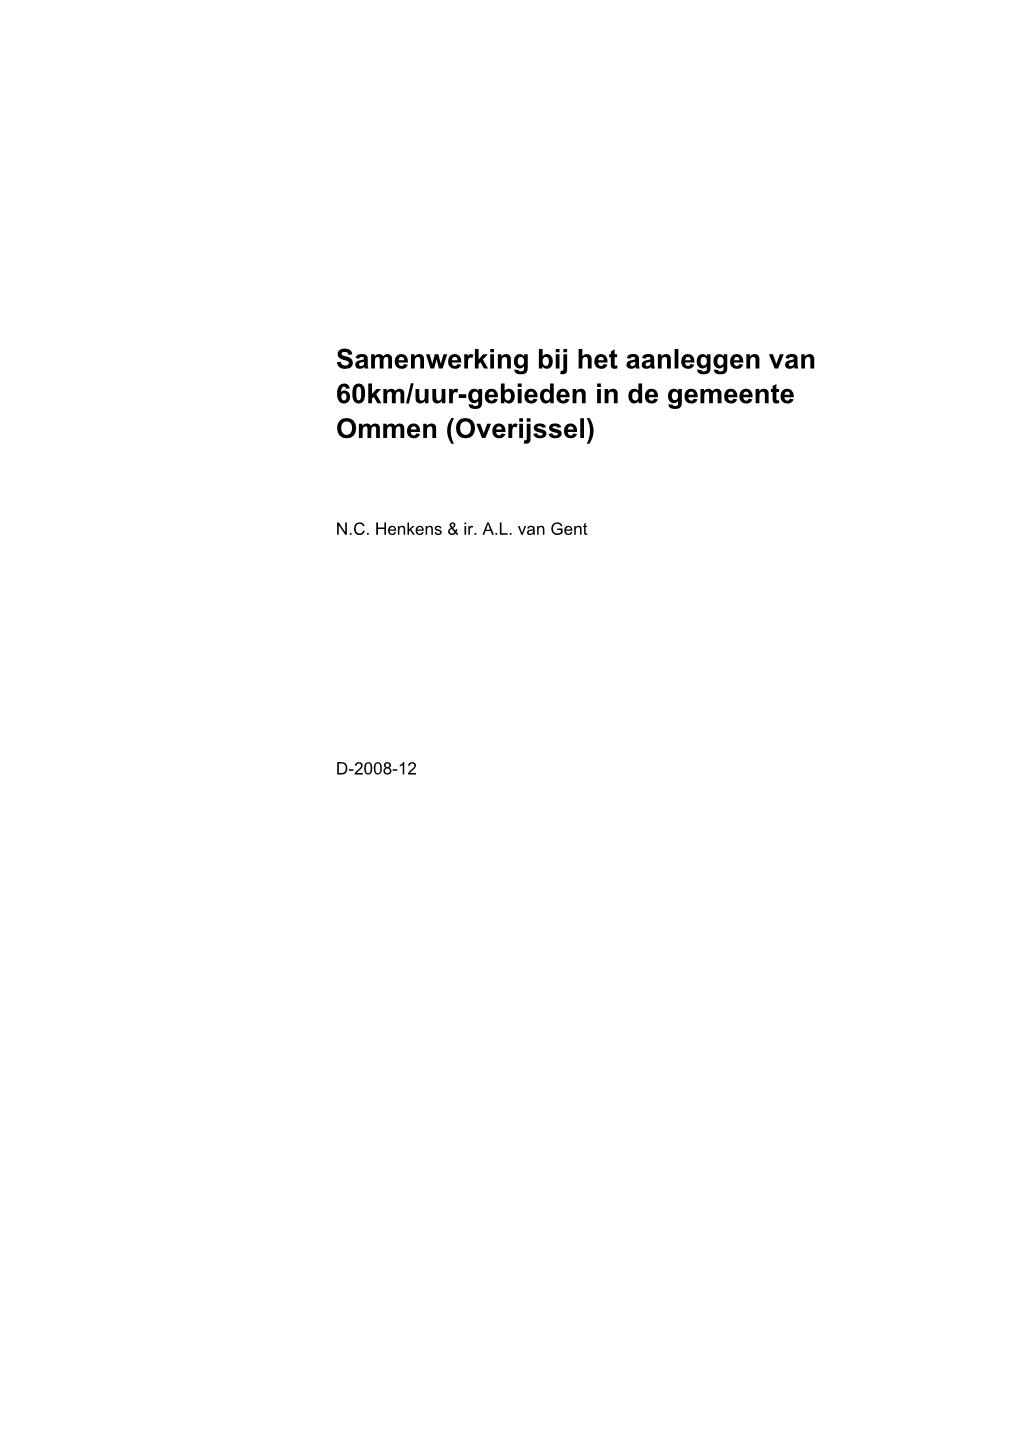 Samenwerking Bij Het Aanleggen Van 60Km/Uur-Gebieden in De Gemeente Ommen (Overijssel)